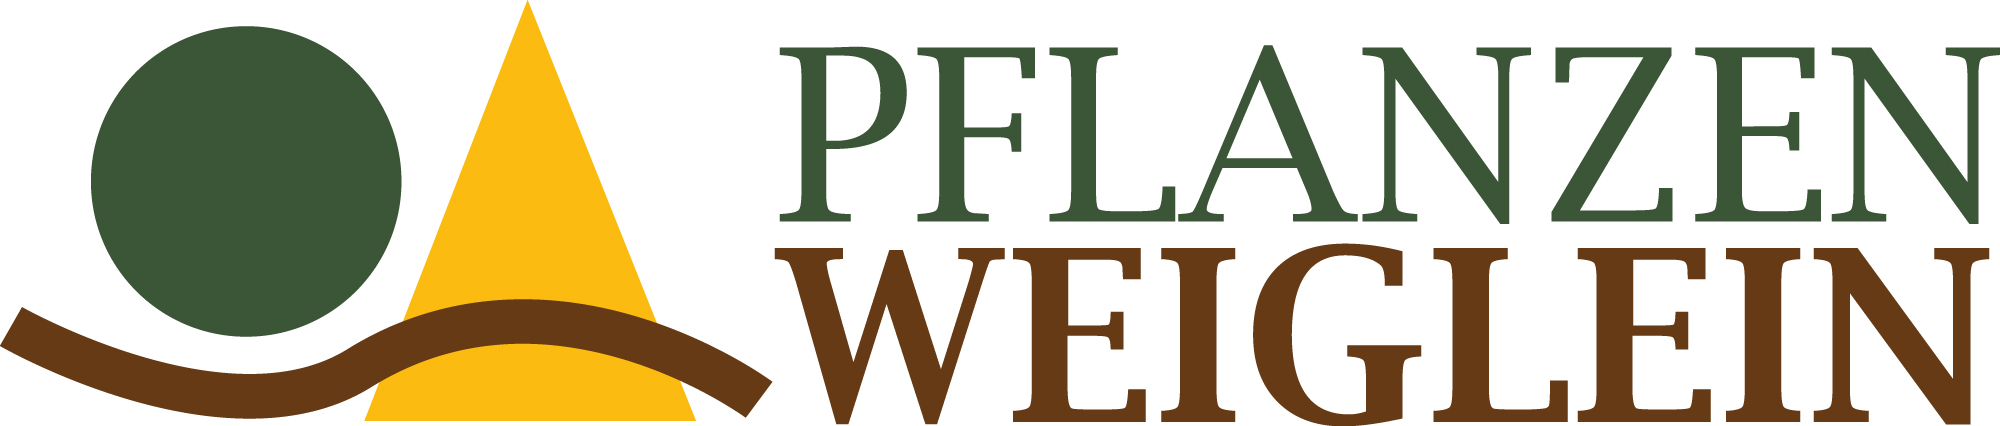 Pflanzen_Weiglein-Logo21